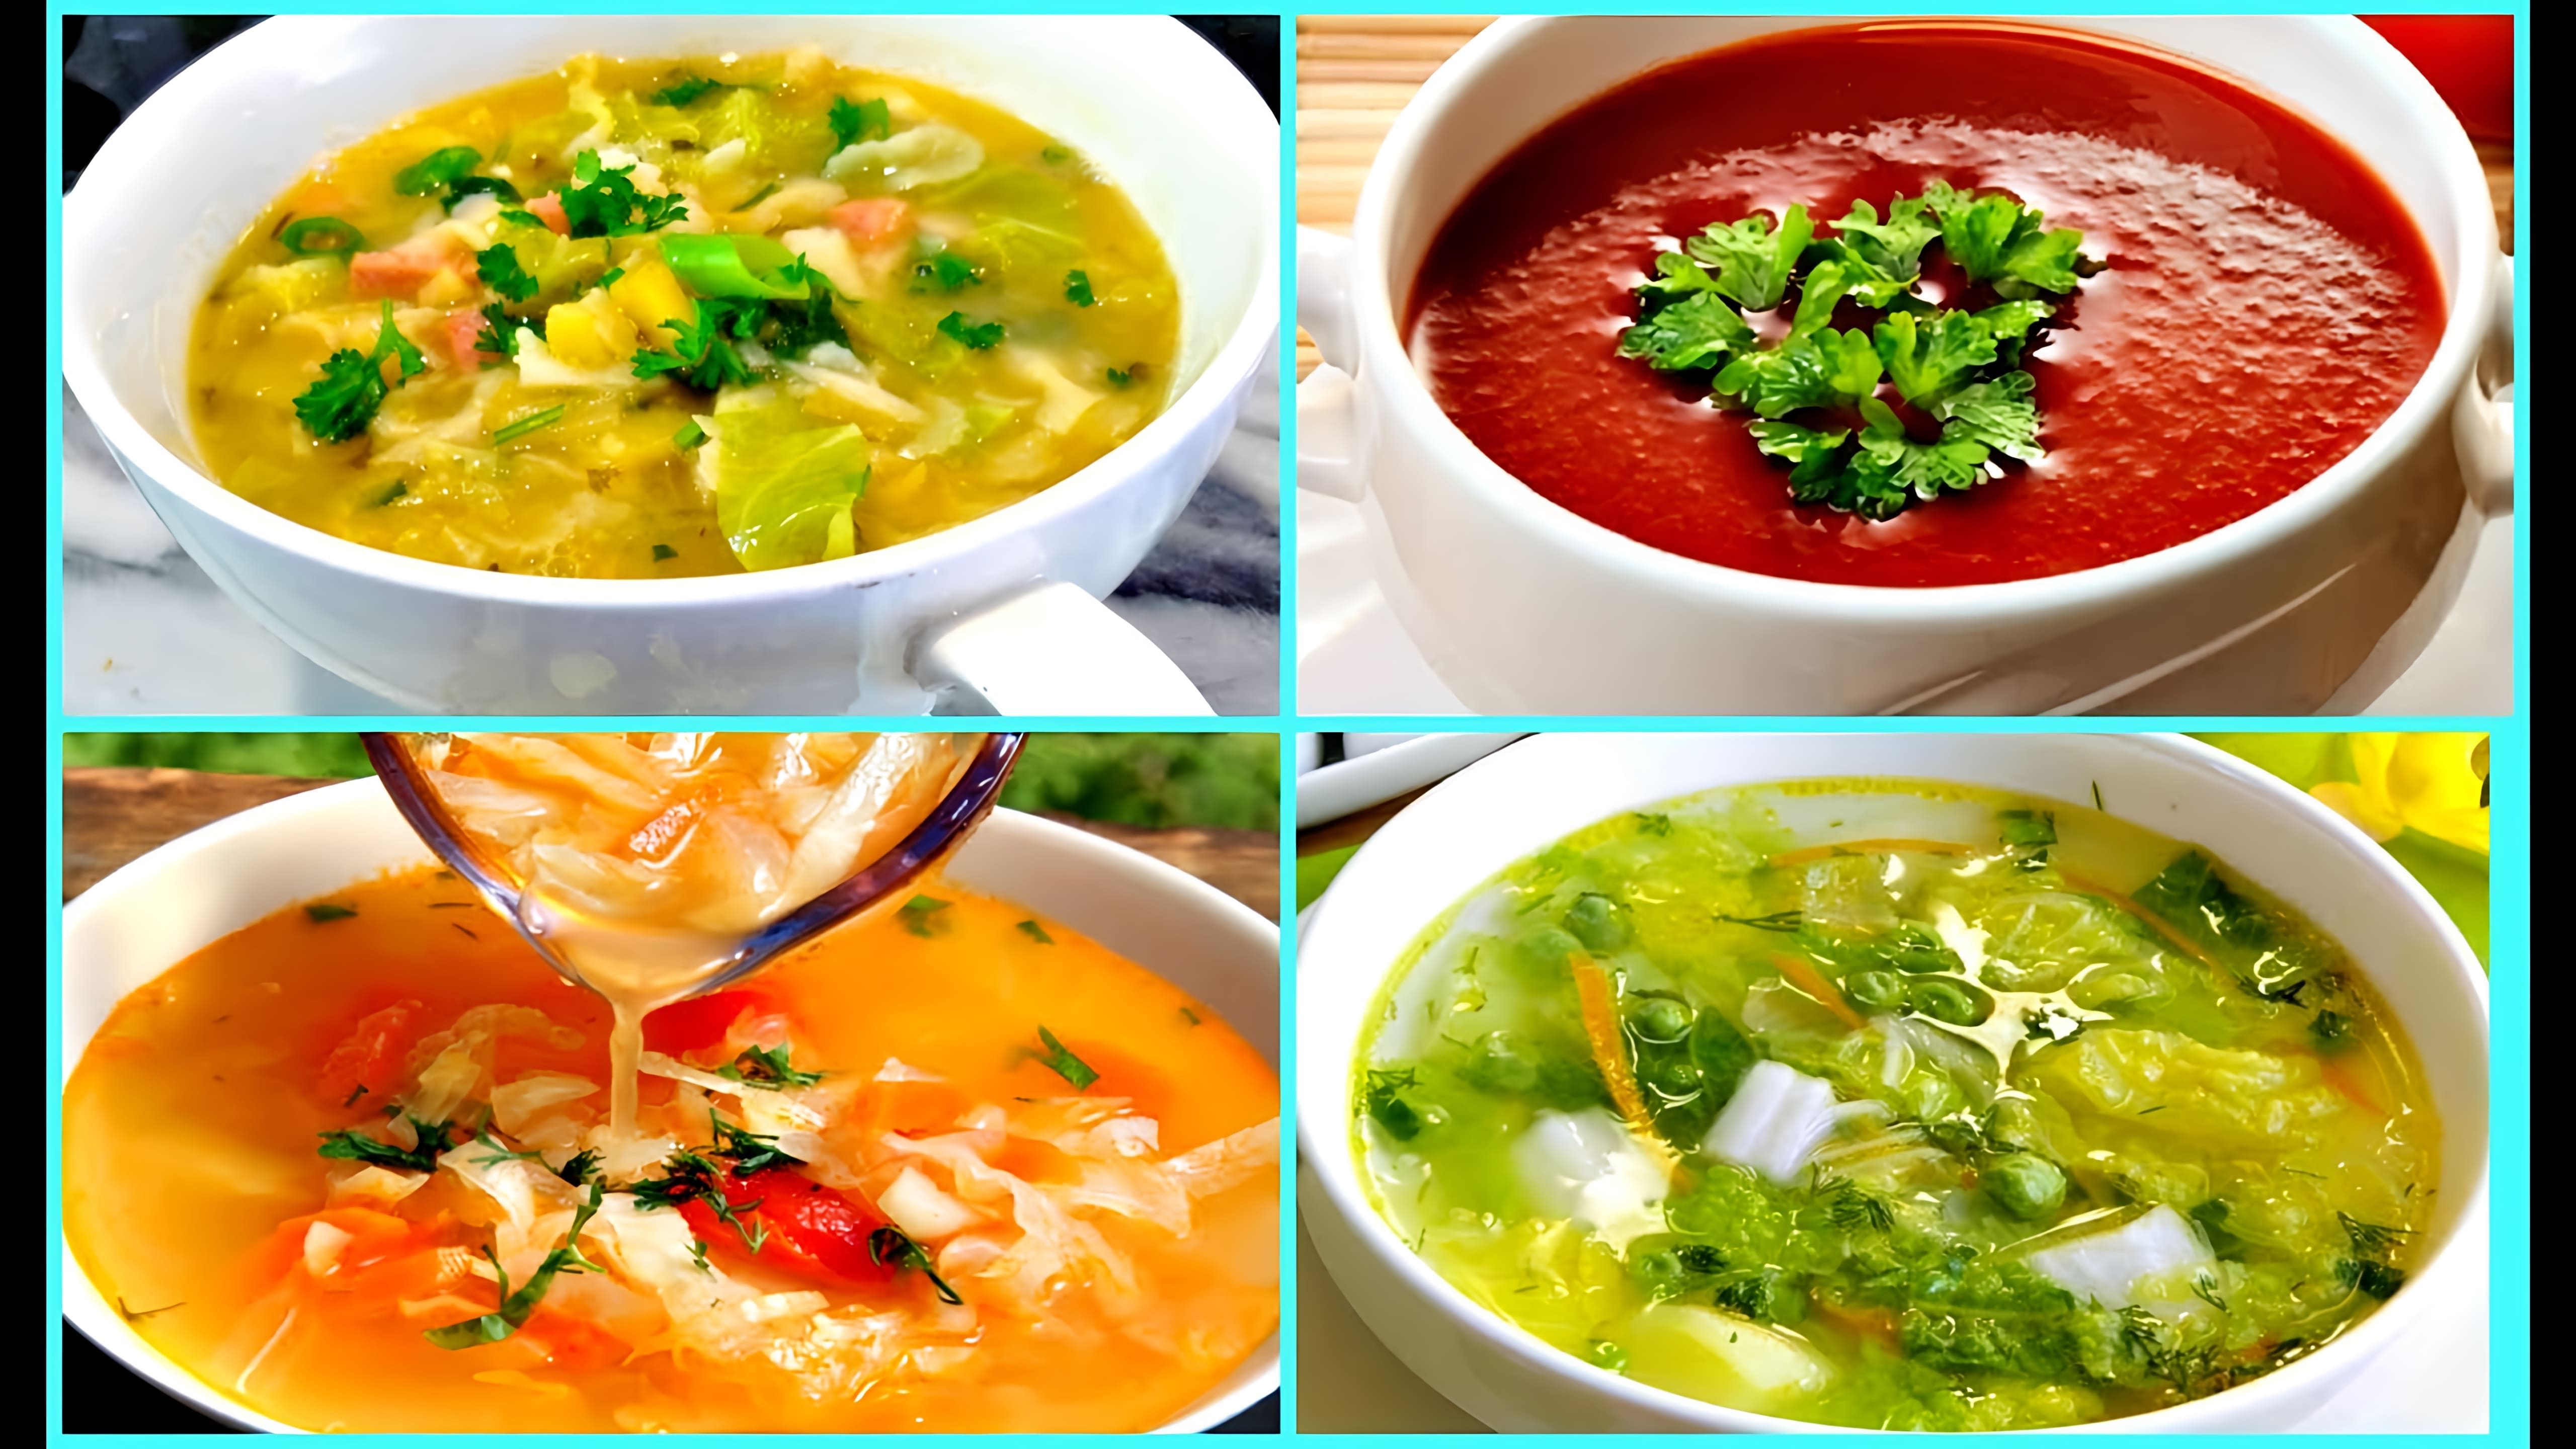 В этом видео рассказывается о диете, основанной на употреблении овощного супа